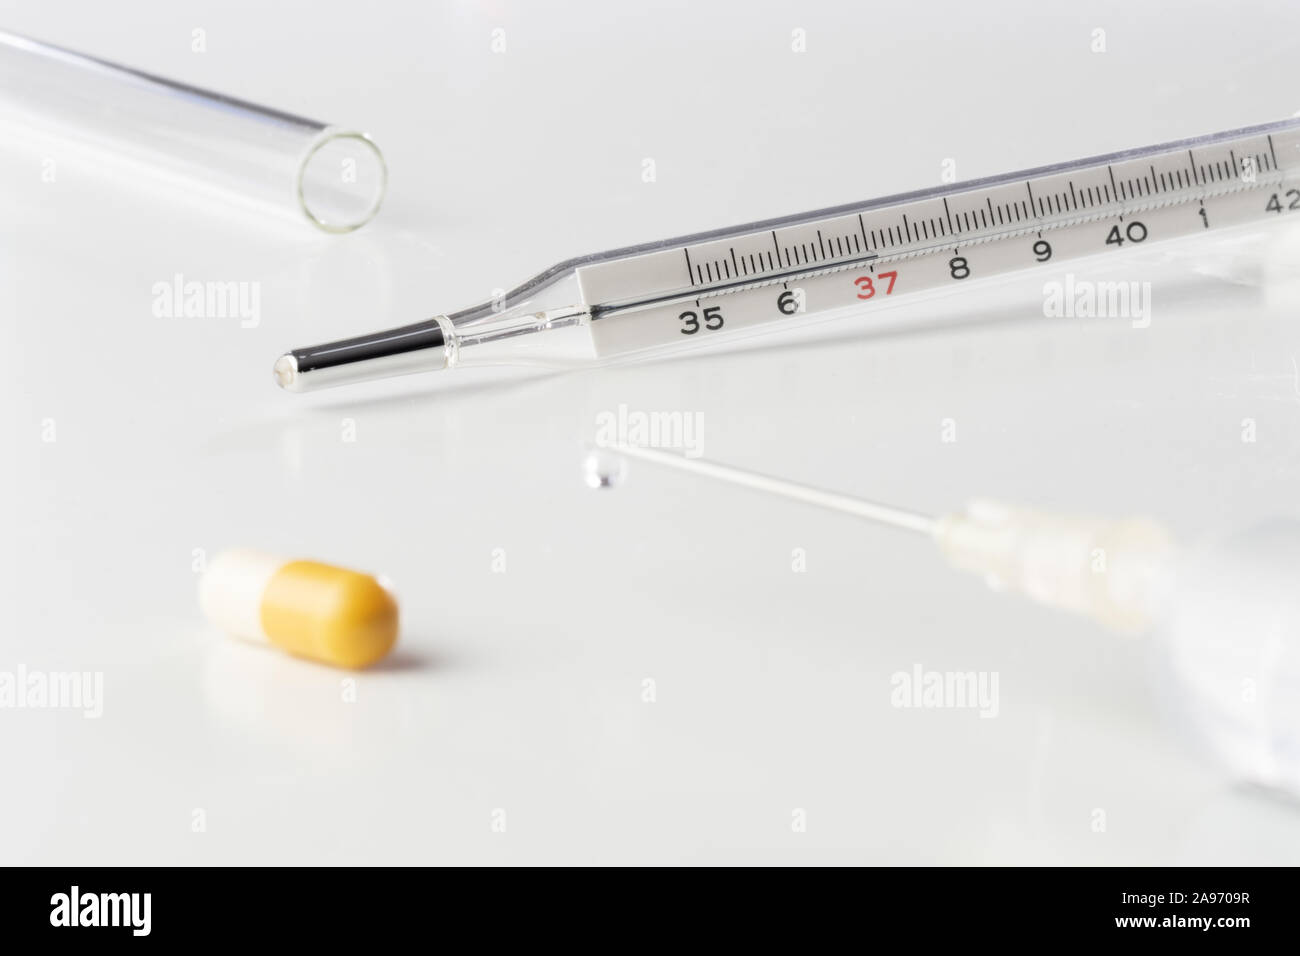 Termometro medico pillola, capsula, vaccino nella siringa medica e tubo di vetro isolato su sfondo bianco. La vaccinazione, influenza, medicina, farmacia, pedia Foto Stock